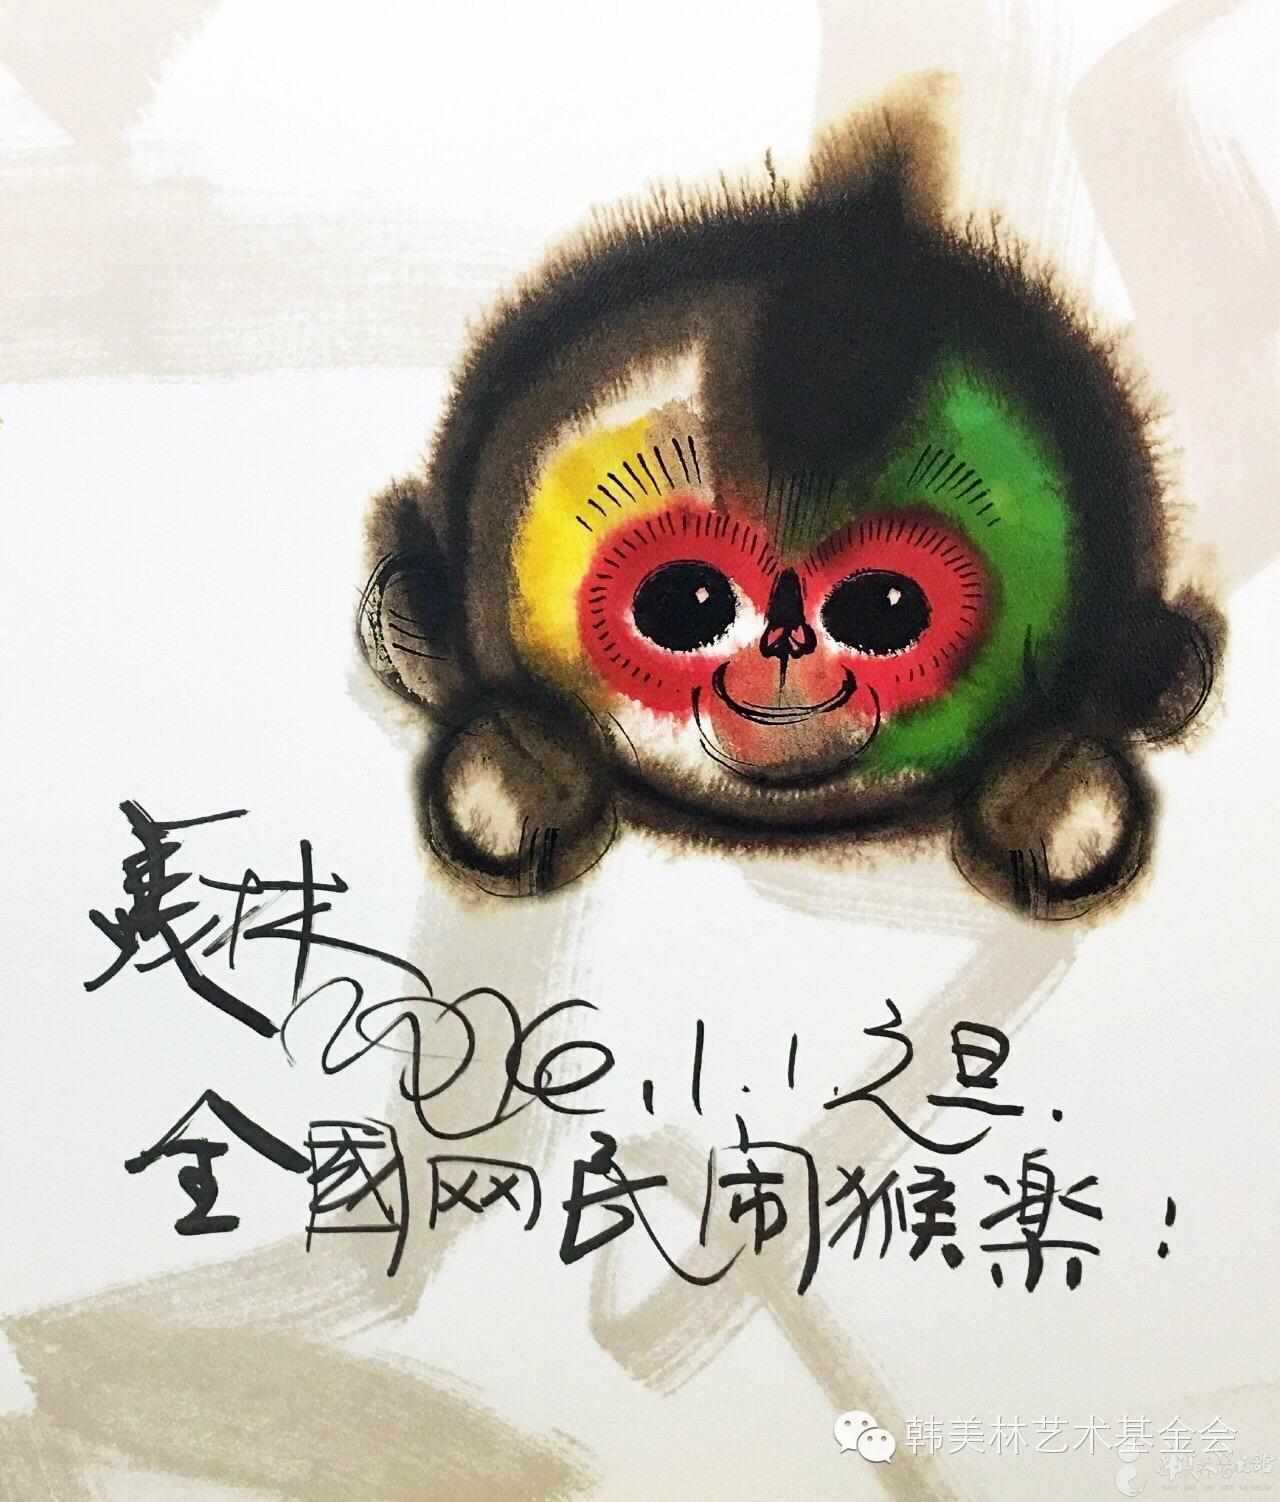 可爱卡通猴图片 - 素材公社 tooopen.com